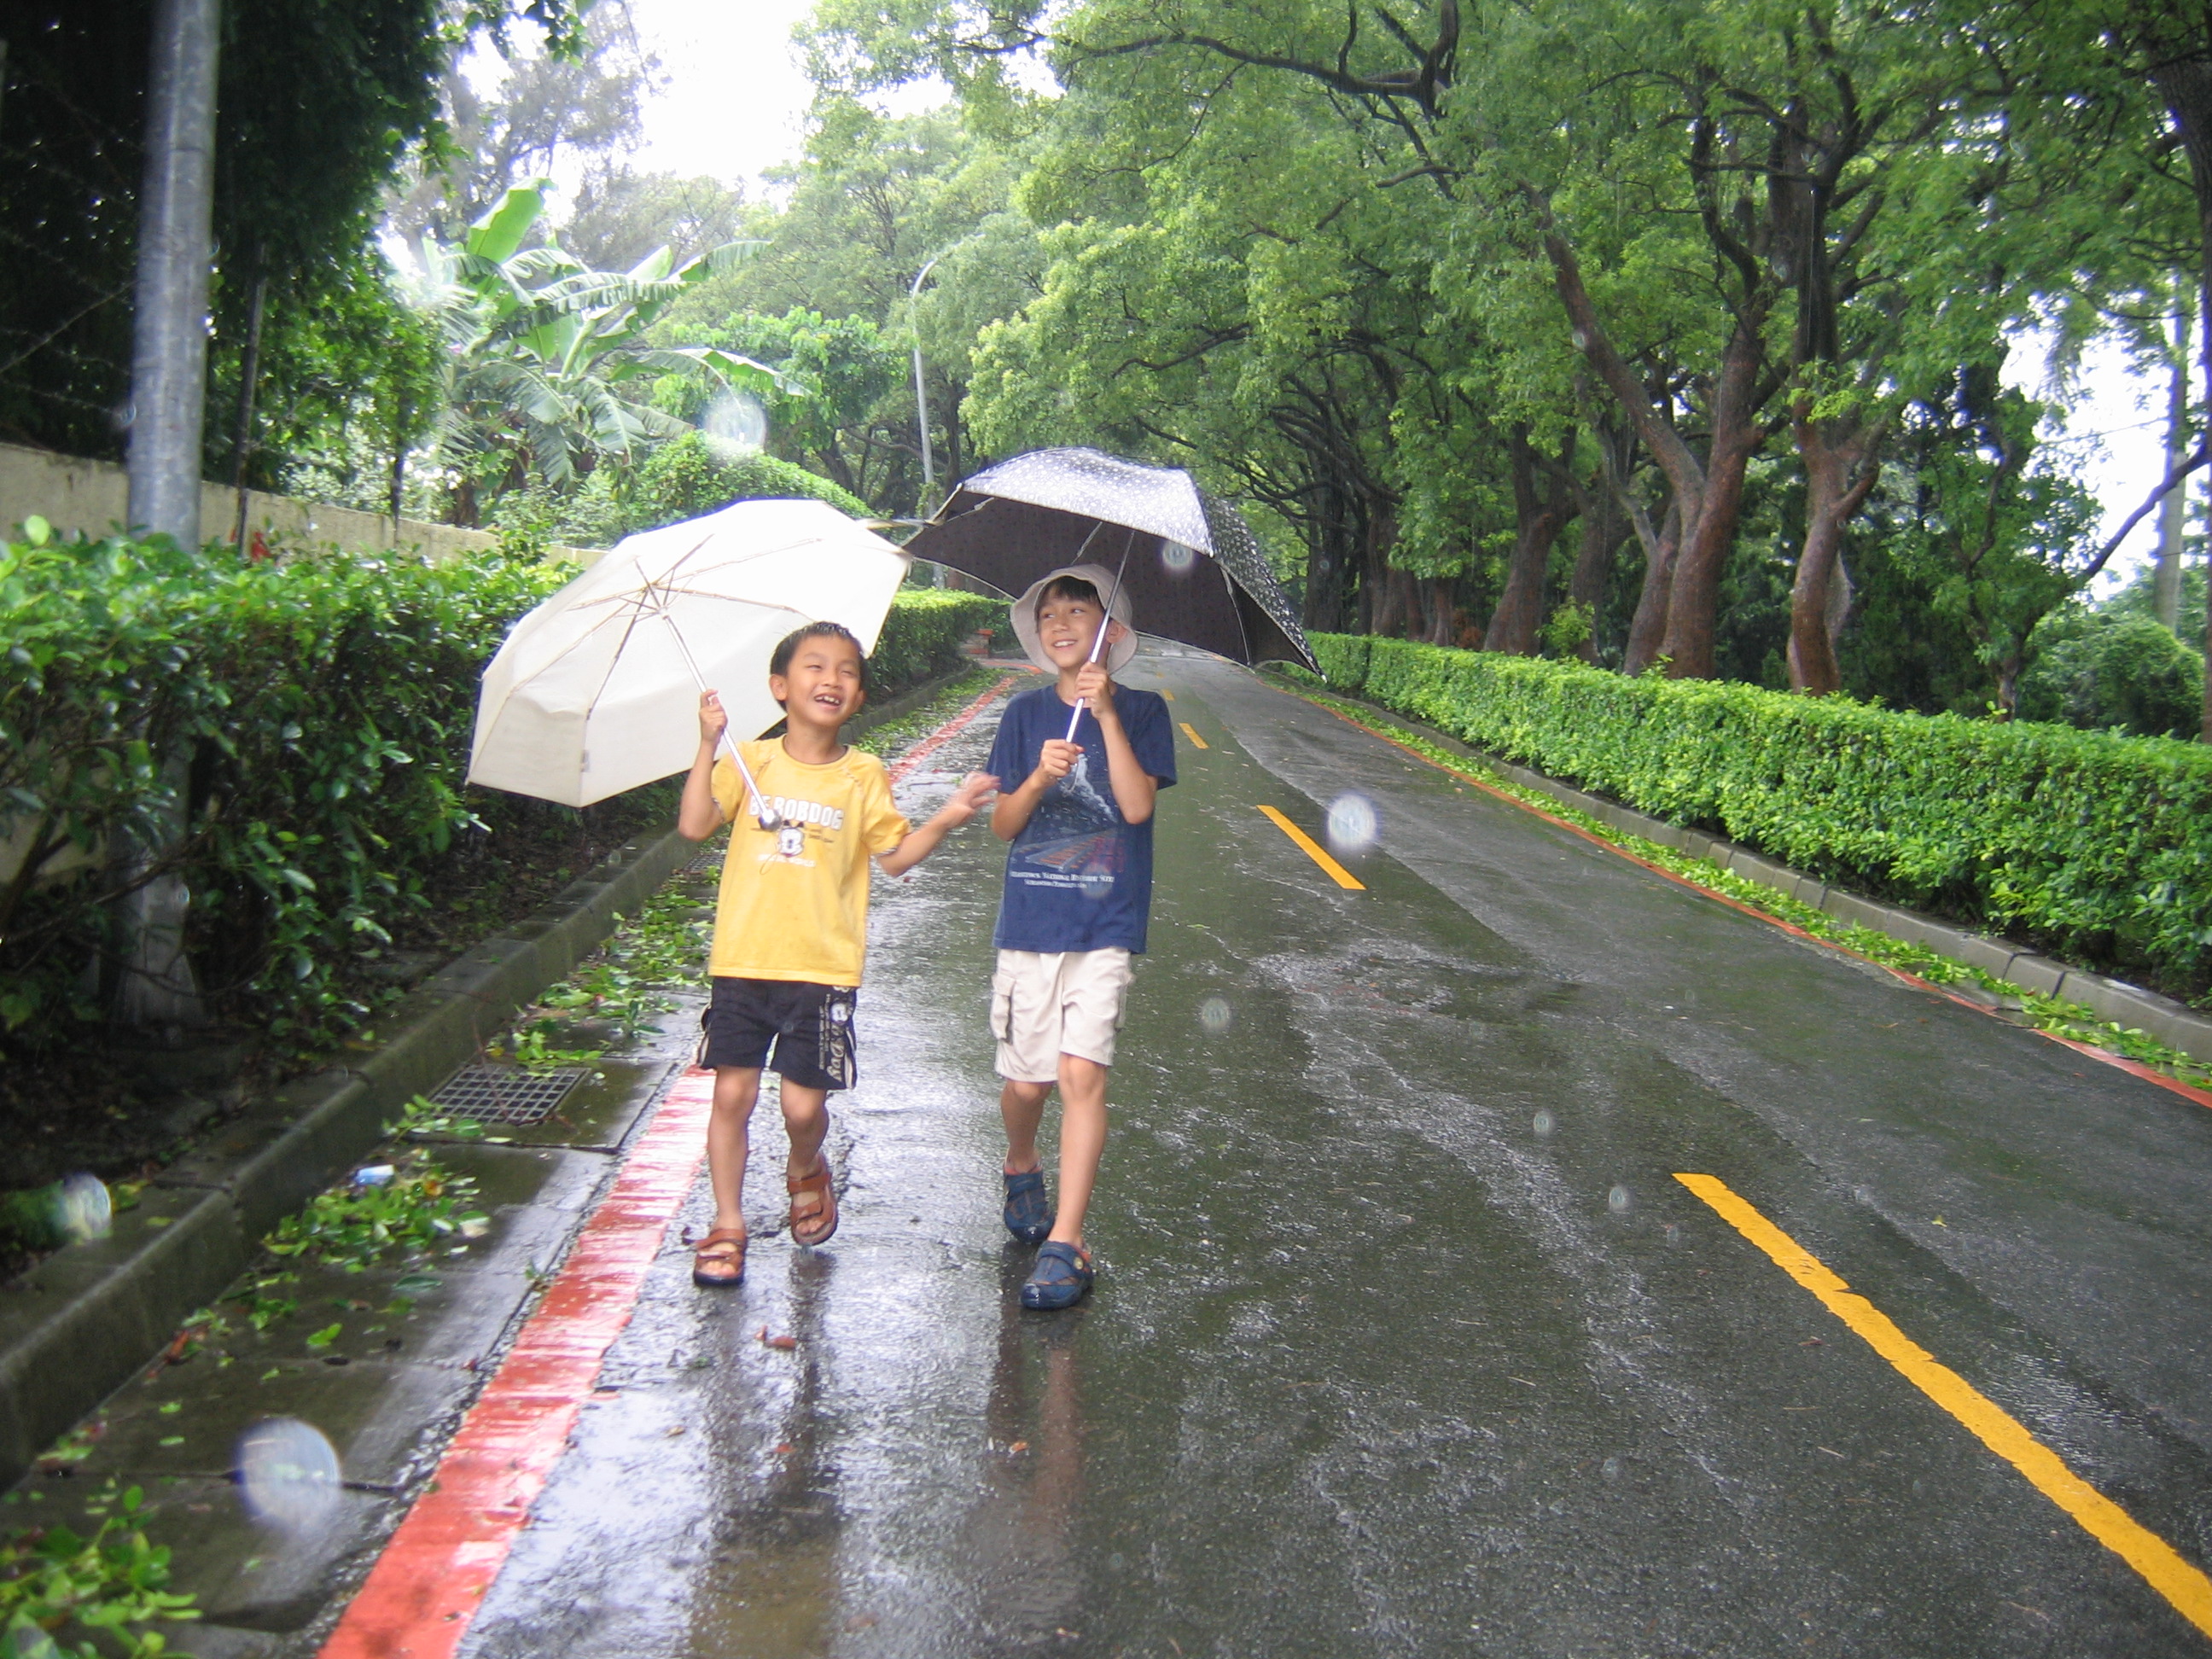 regenwetter tapeten,regen,regenschirm,durchgangsstraße,freizeit,gehen